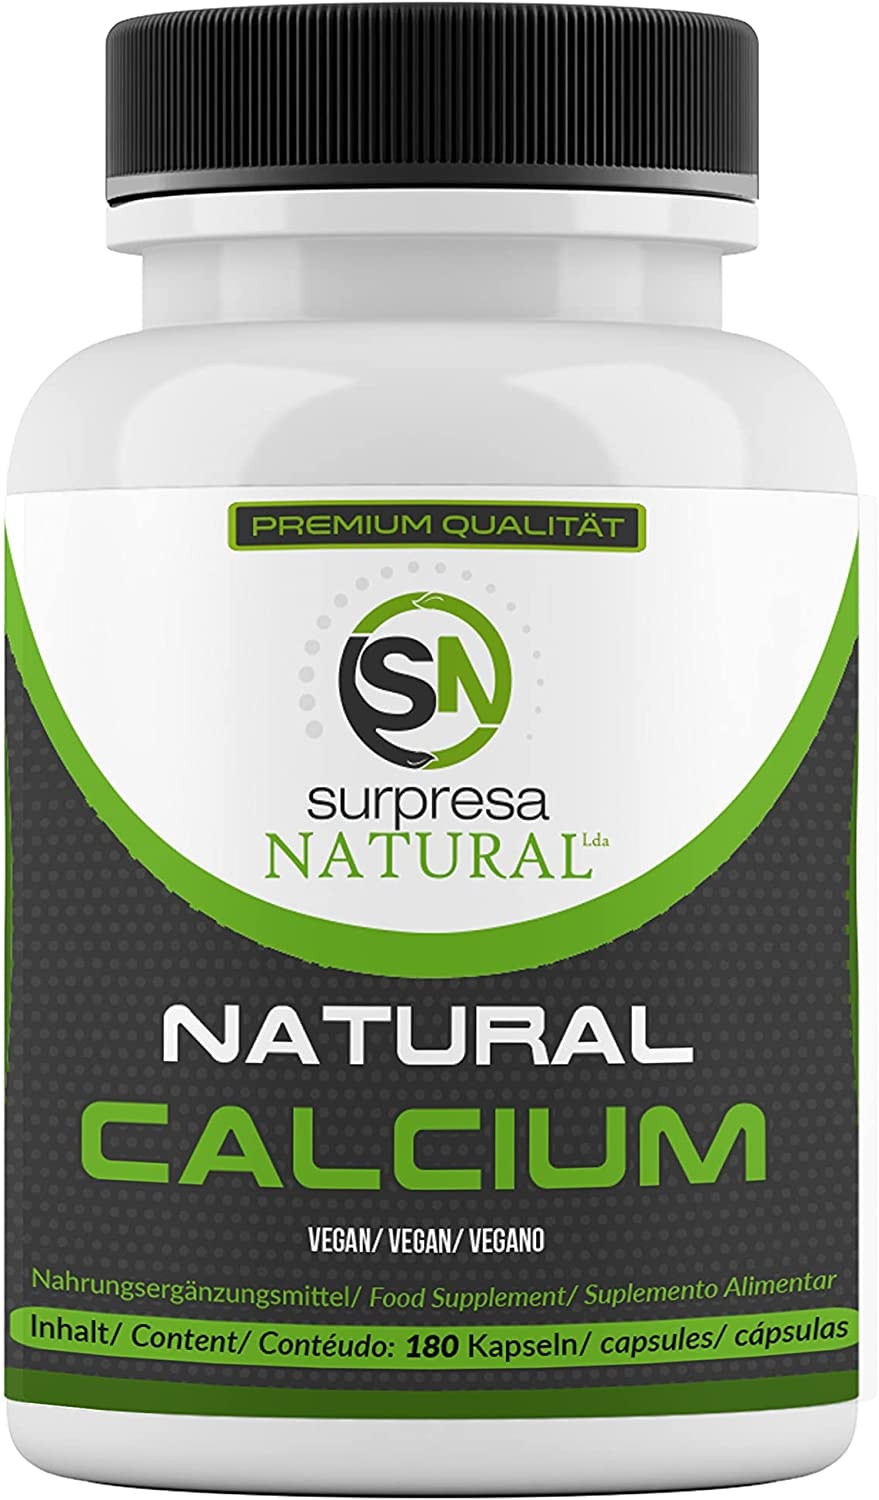 Surpresa Natural® - Natural Calcium hochdosiert | 100% natürliches Kalzium hochdosiert | 180 Calcium Kapseln aus der Rotalge für 2 Monate Vorrat | laborgeprüft & vegan | Made in Germany